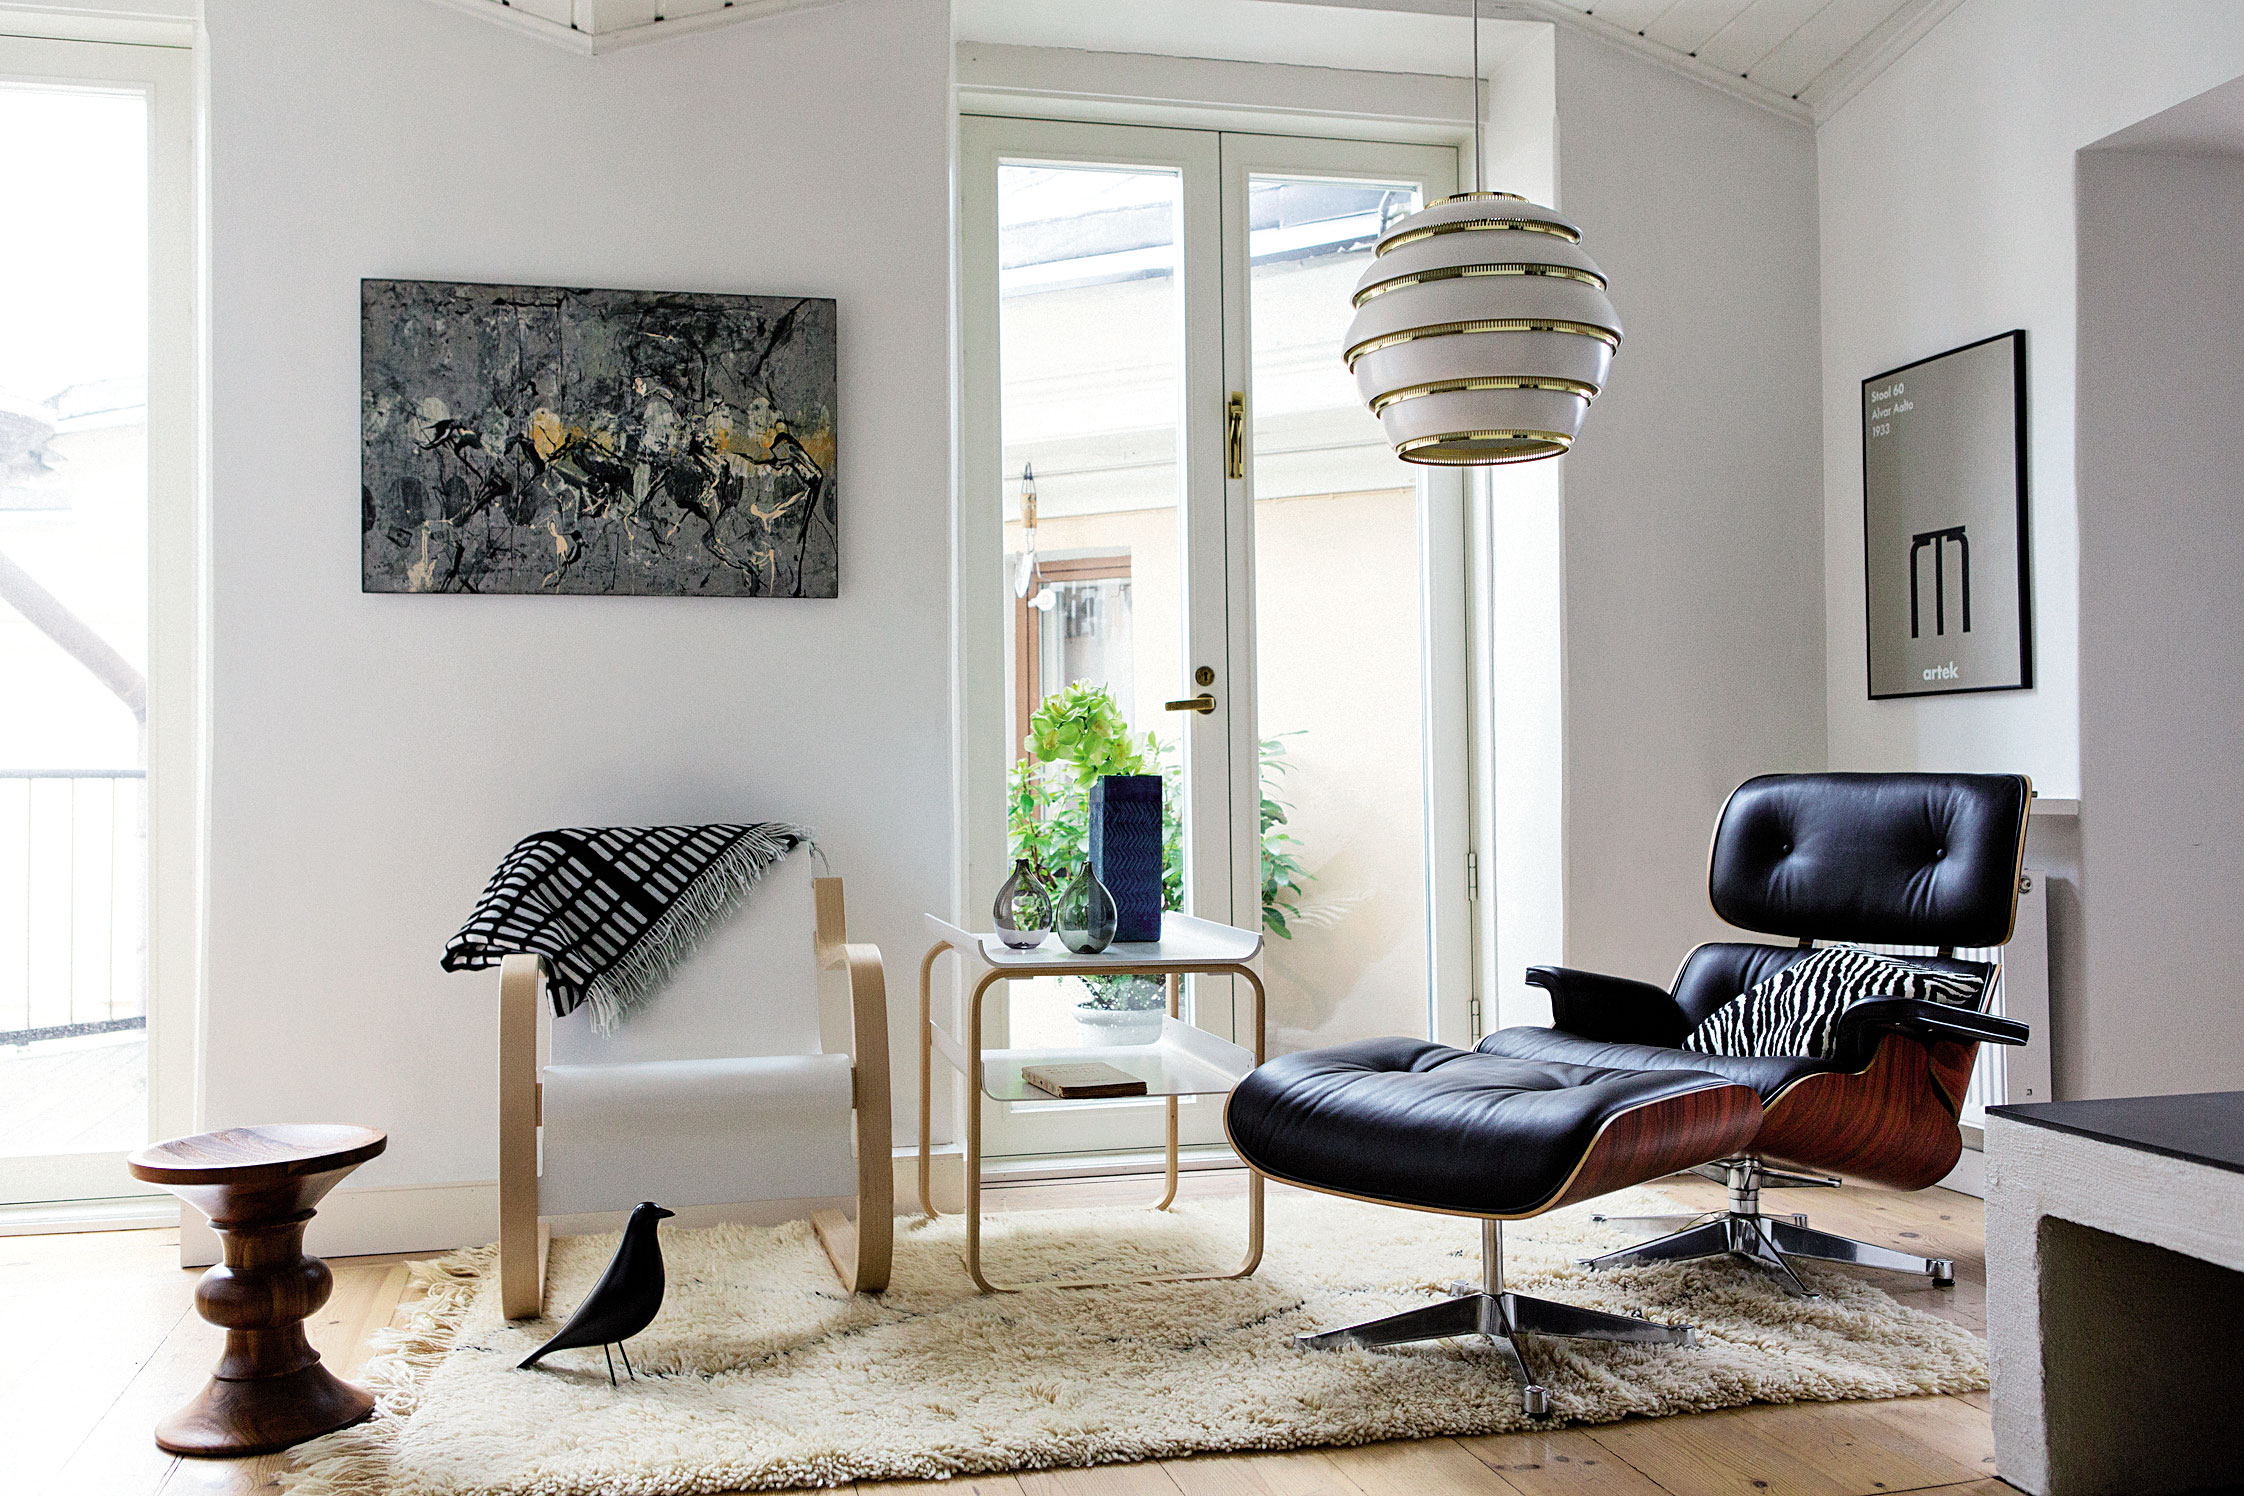 Spojenie Vitry a Arteku v jednom interiéri: (sprava doľava) kreslo Lounge Chair (Vitra, dizajn: Charles & Ray Eames, 1956), svietidlo Pendant A331 (dizajn: Alvar Aalto, 1953), stolček Table 915 (dizajn: Alvar Aalto, 1932), kreslo Armchair 42 (Artek, Alvar Aalto, 1932)